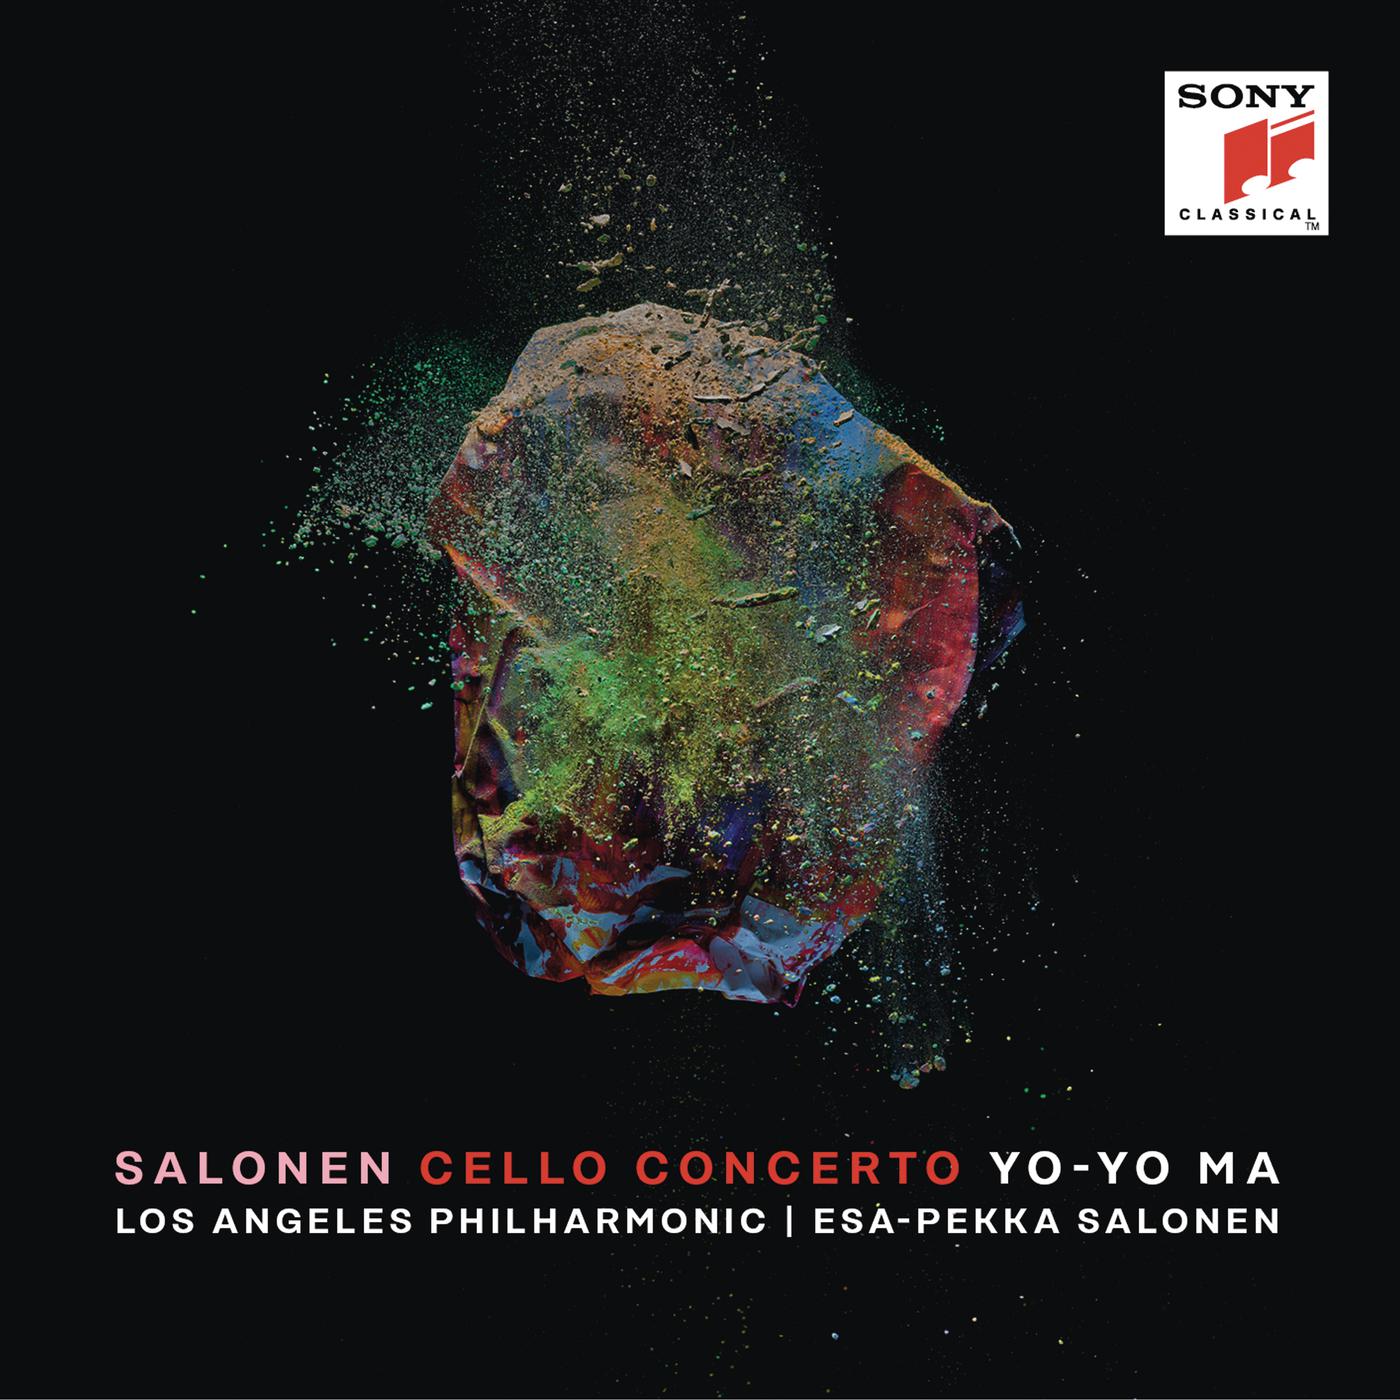 Salonen Cello Concerto: I.